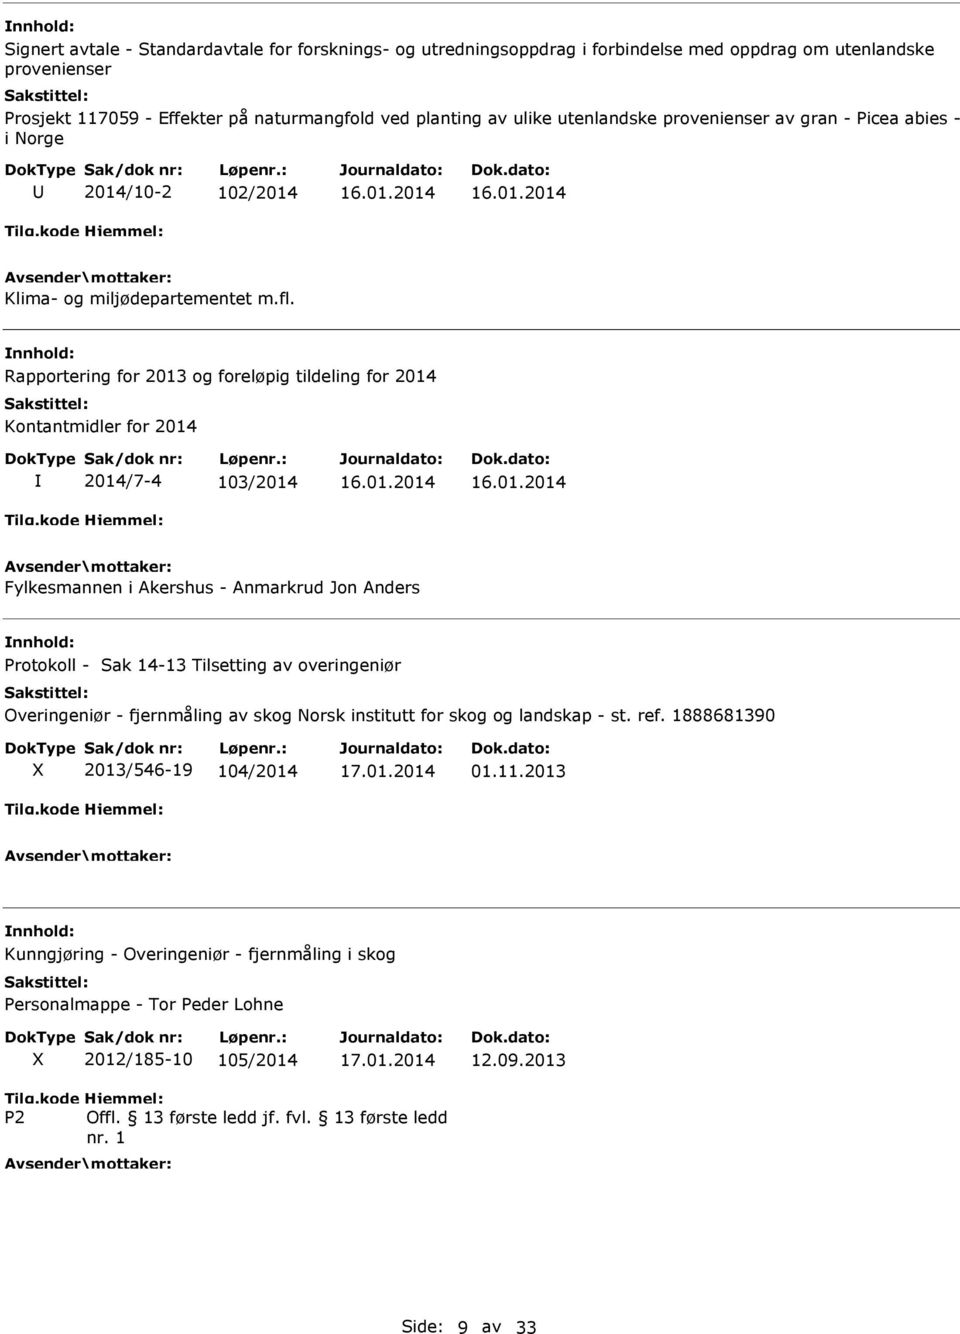 Rapportering for 2013 og foreløpig tildeling for 2014 Kontantmidler for 2014 2014/7-4 103/2014 Fylkesmannen i kershus - nmarkrud Jon nders Protokoll - Sak 14-13 Tilsetting av overingeniør